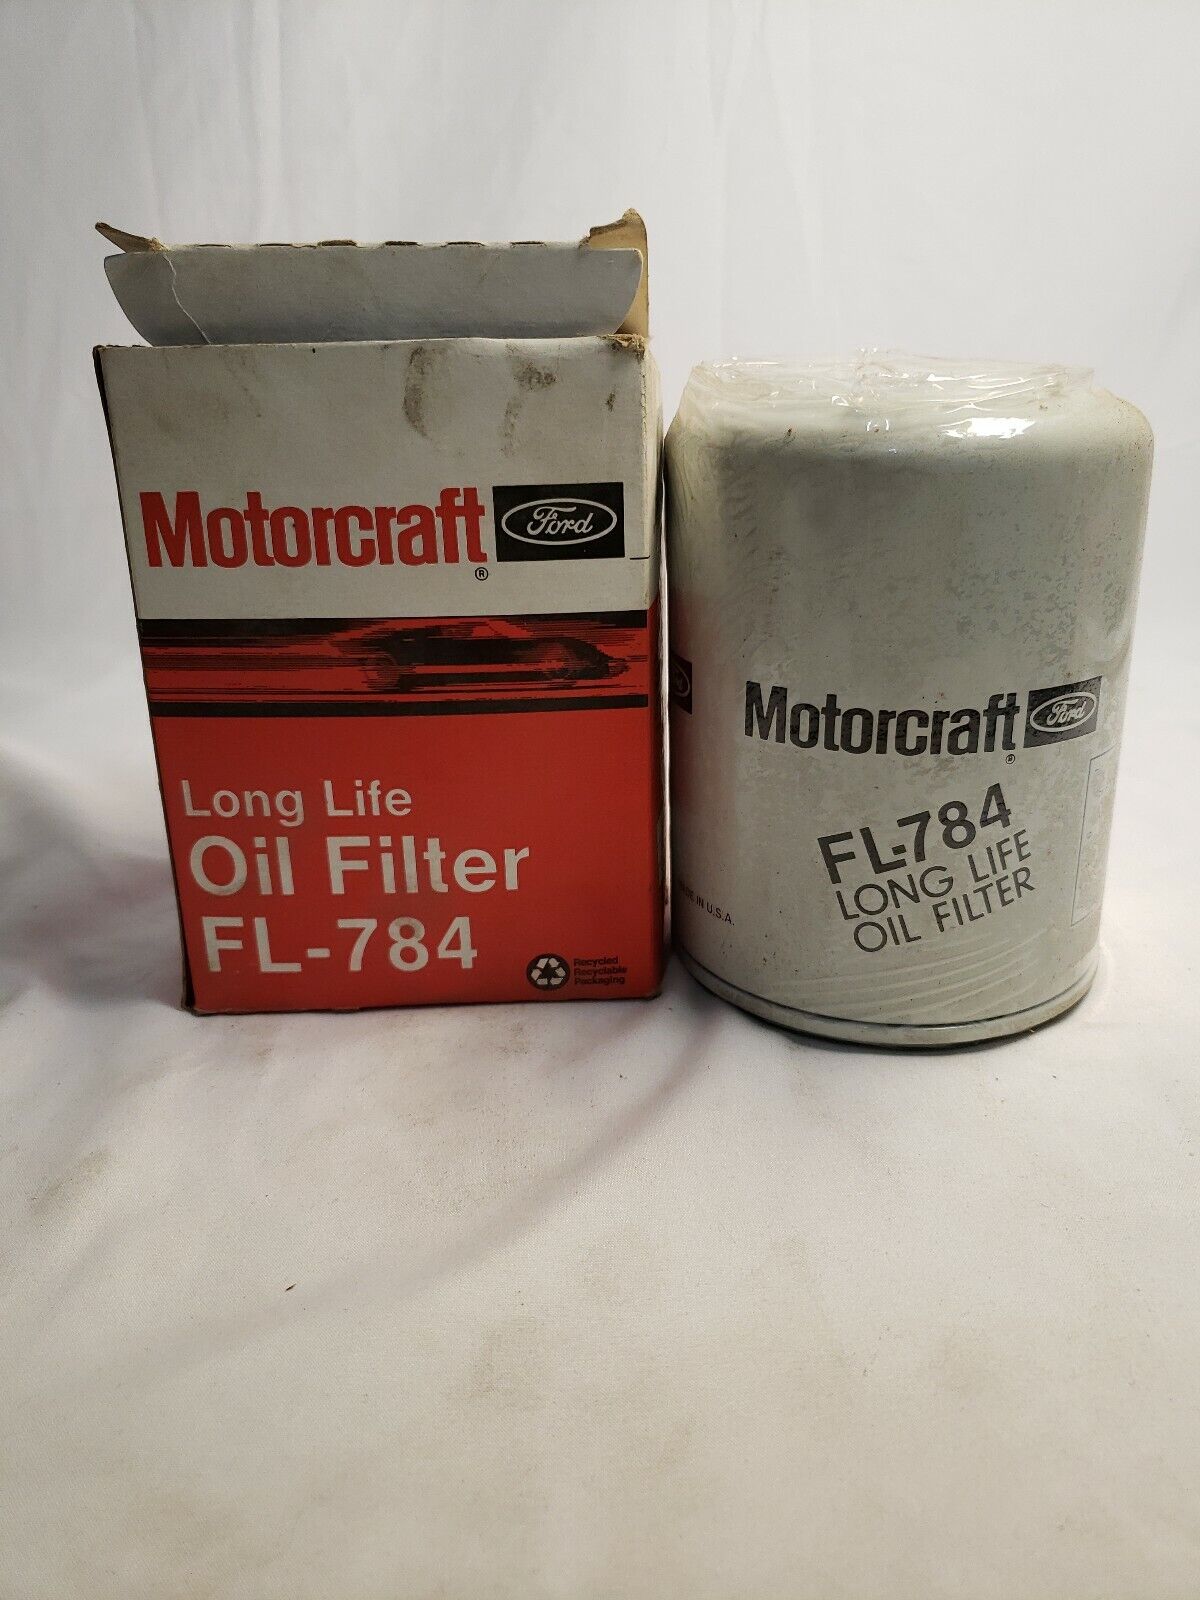 MOTORCRAFT FL-784 Long Life Oil Filter